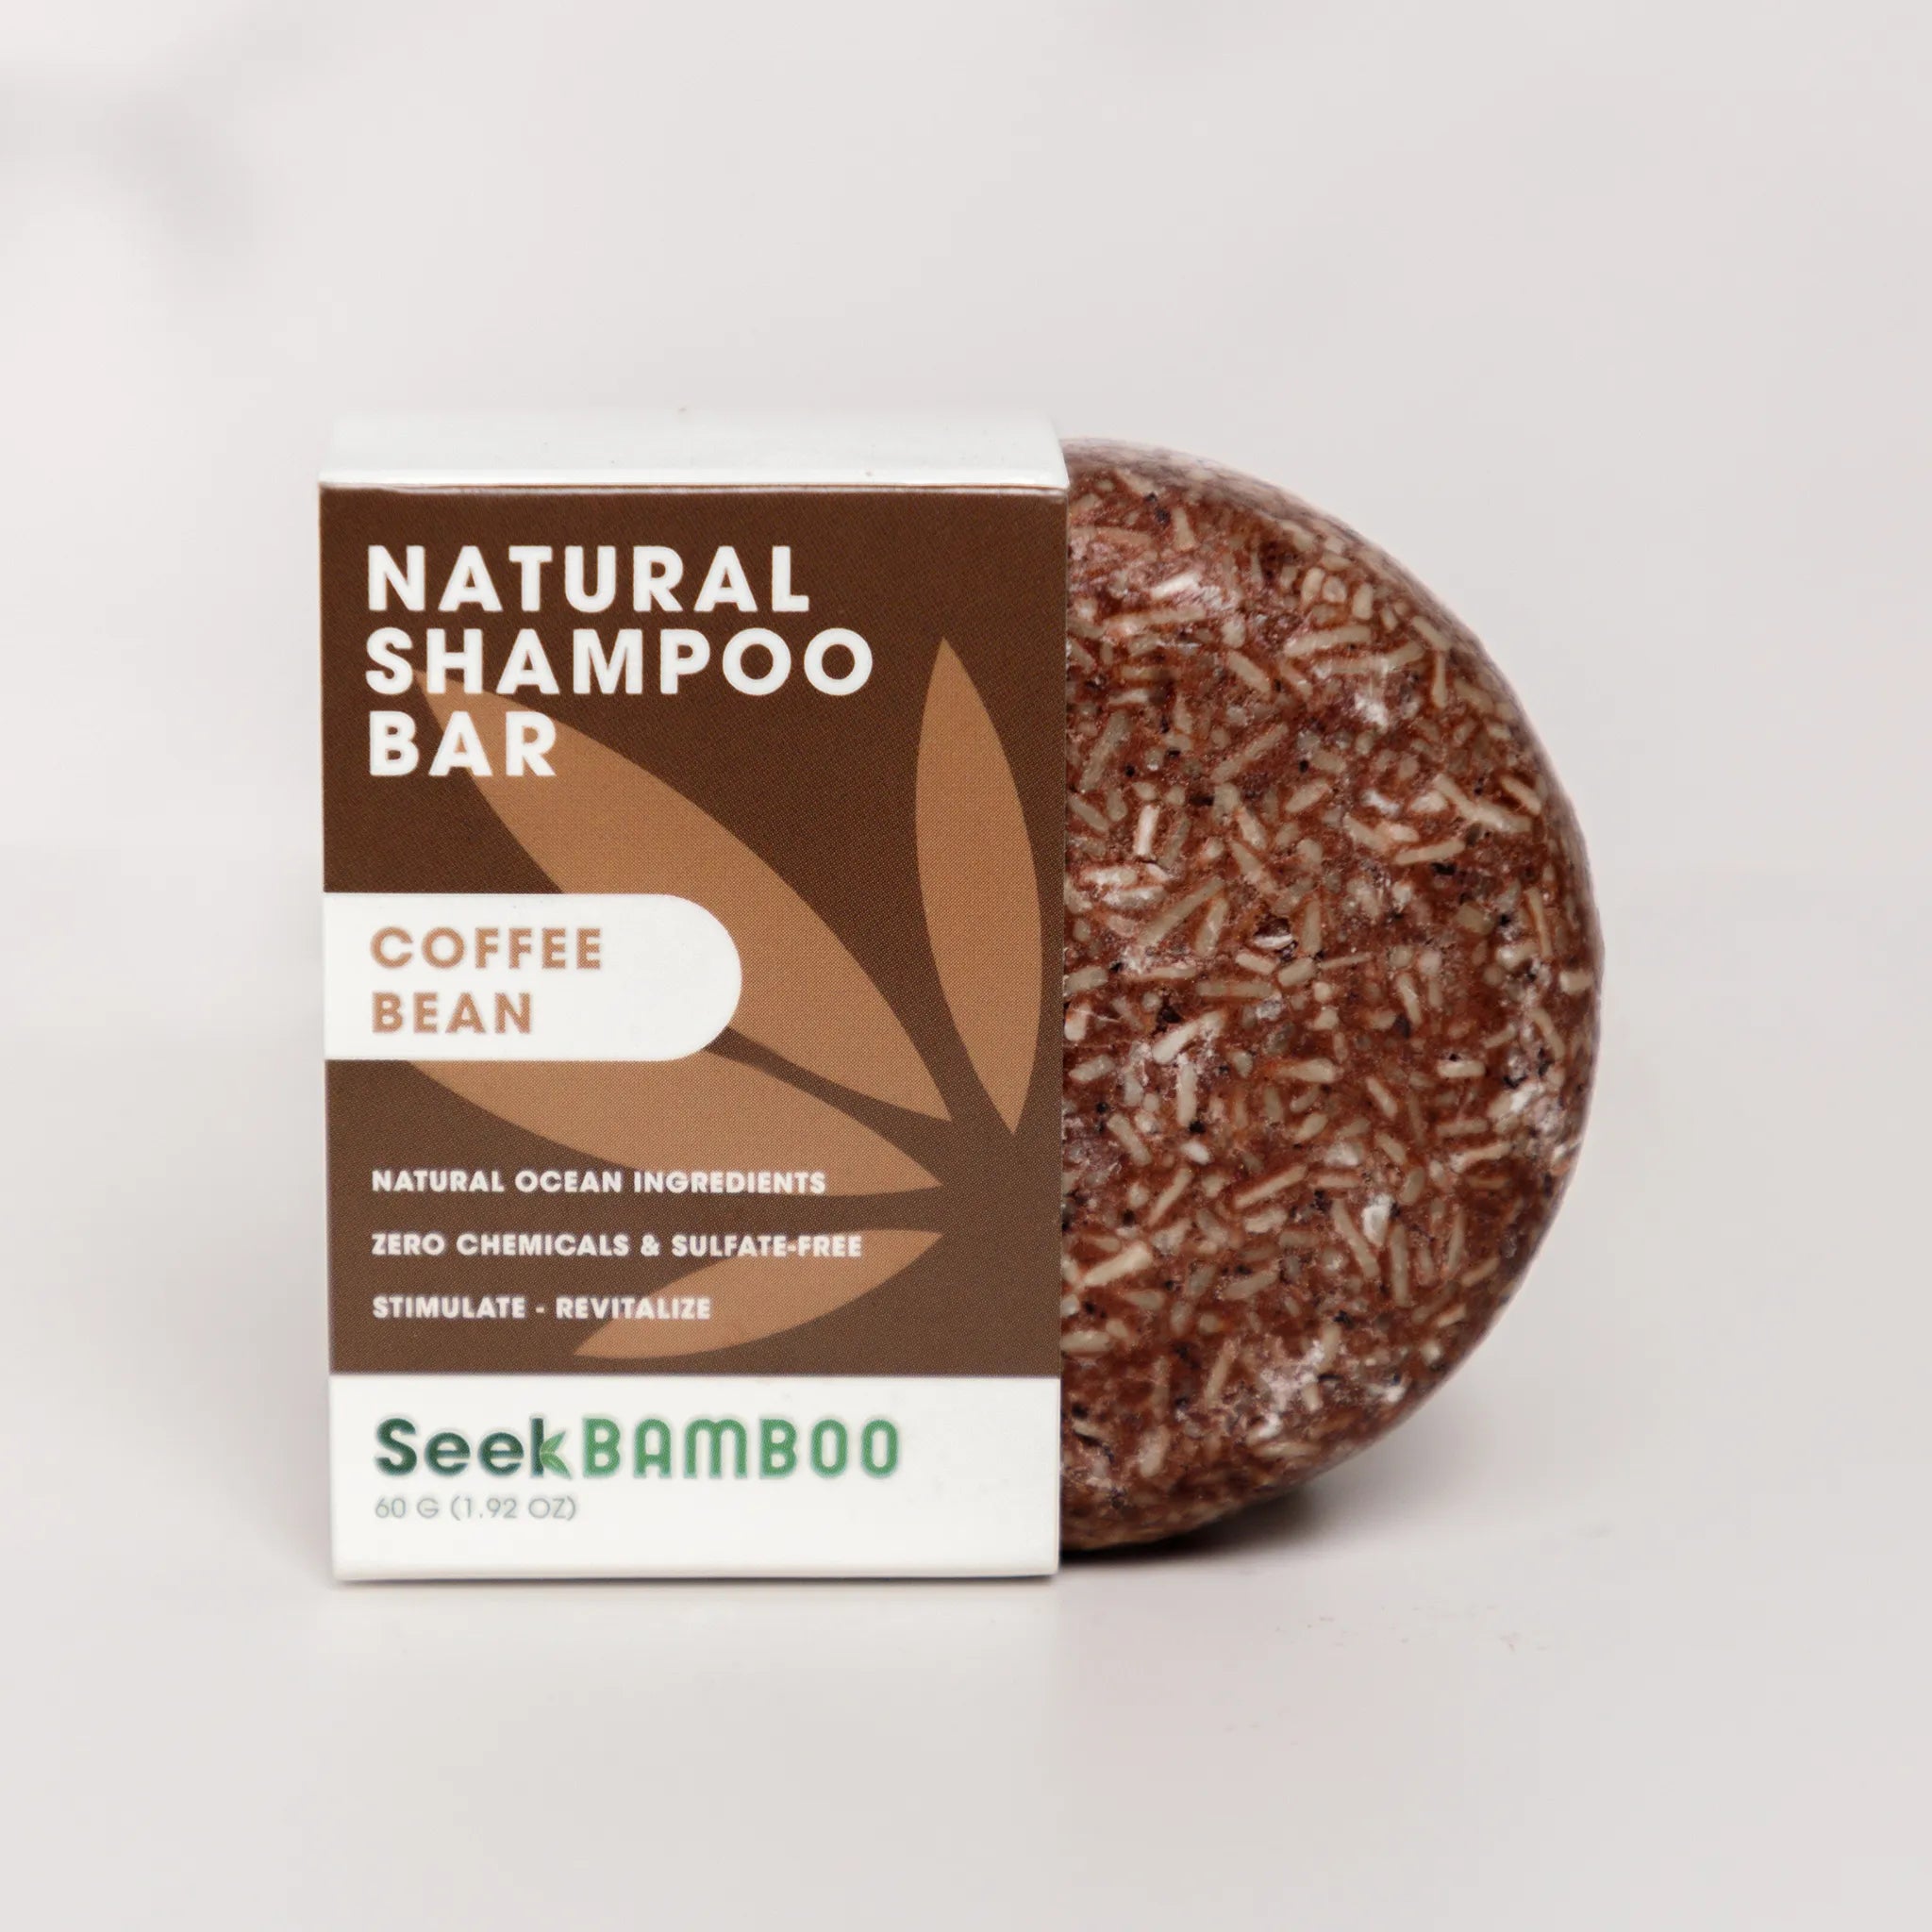 Coffee shampoo